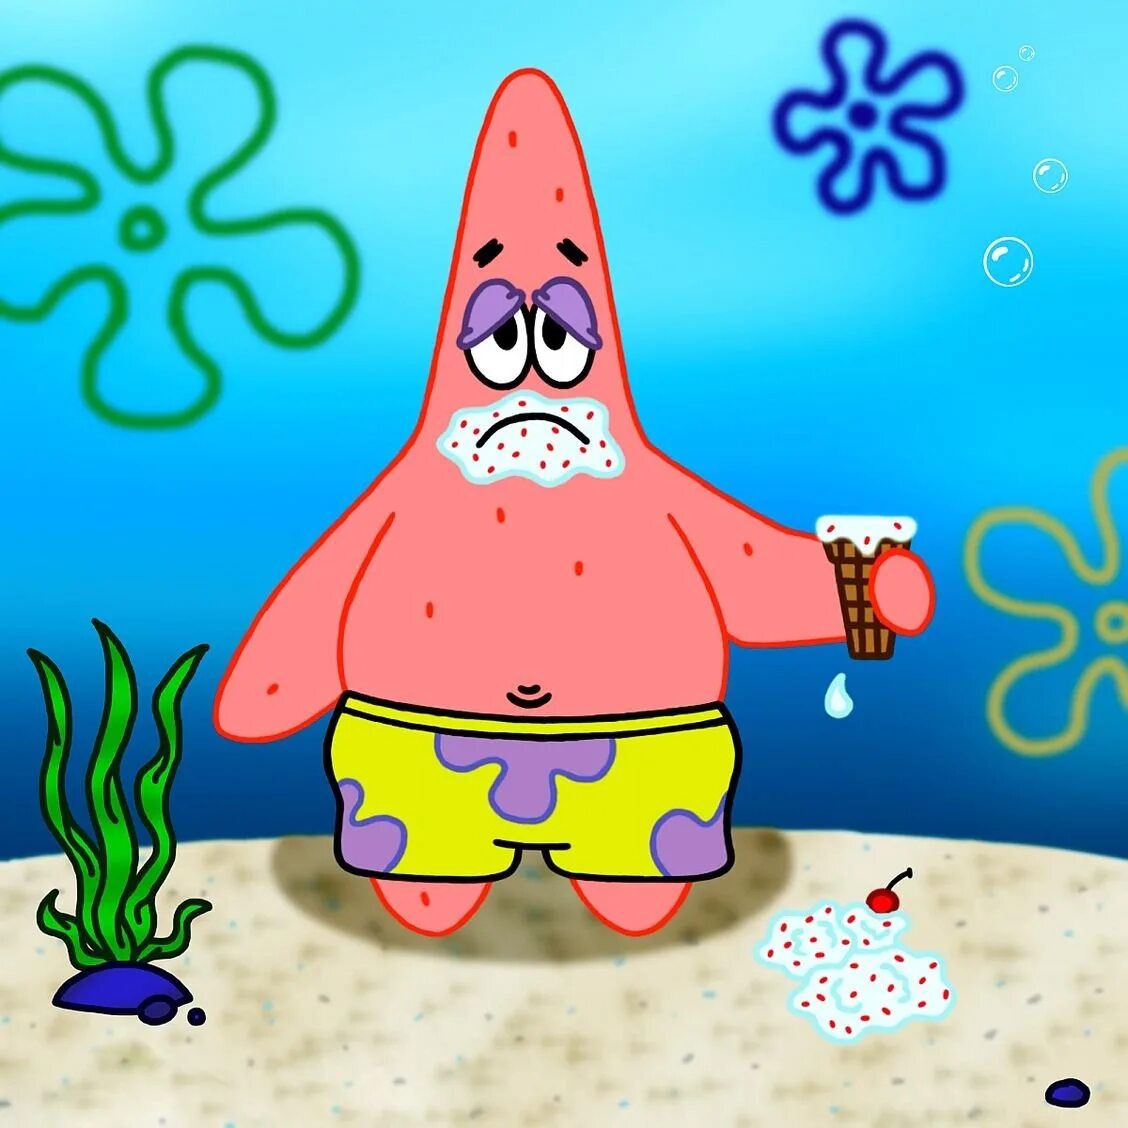 Spongebob patrick. Губка Боб и Патрик. Патрик из губки Боба. Губка Боб квадратные штаны Патрик.